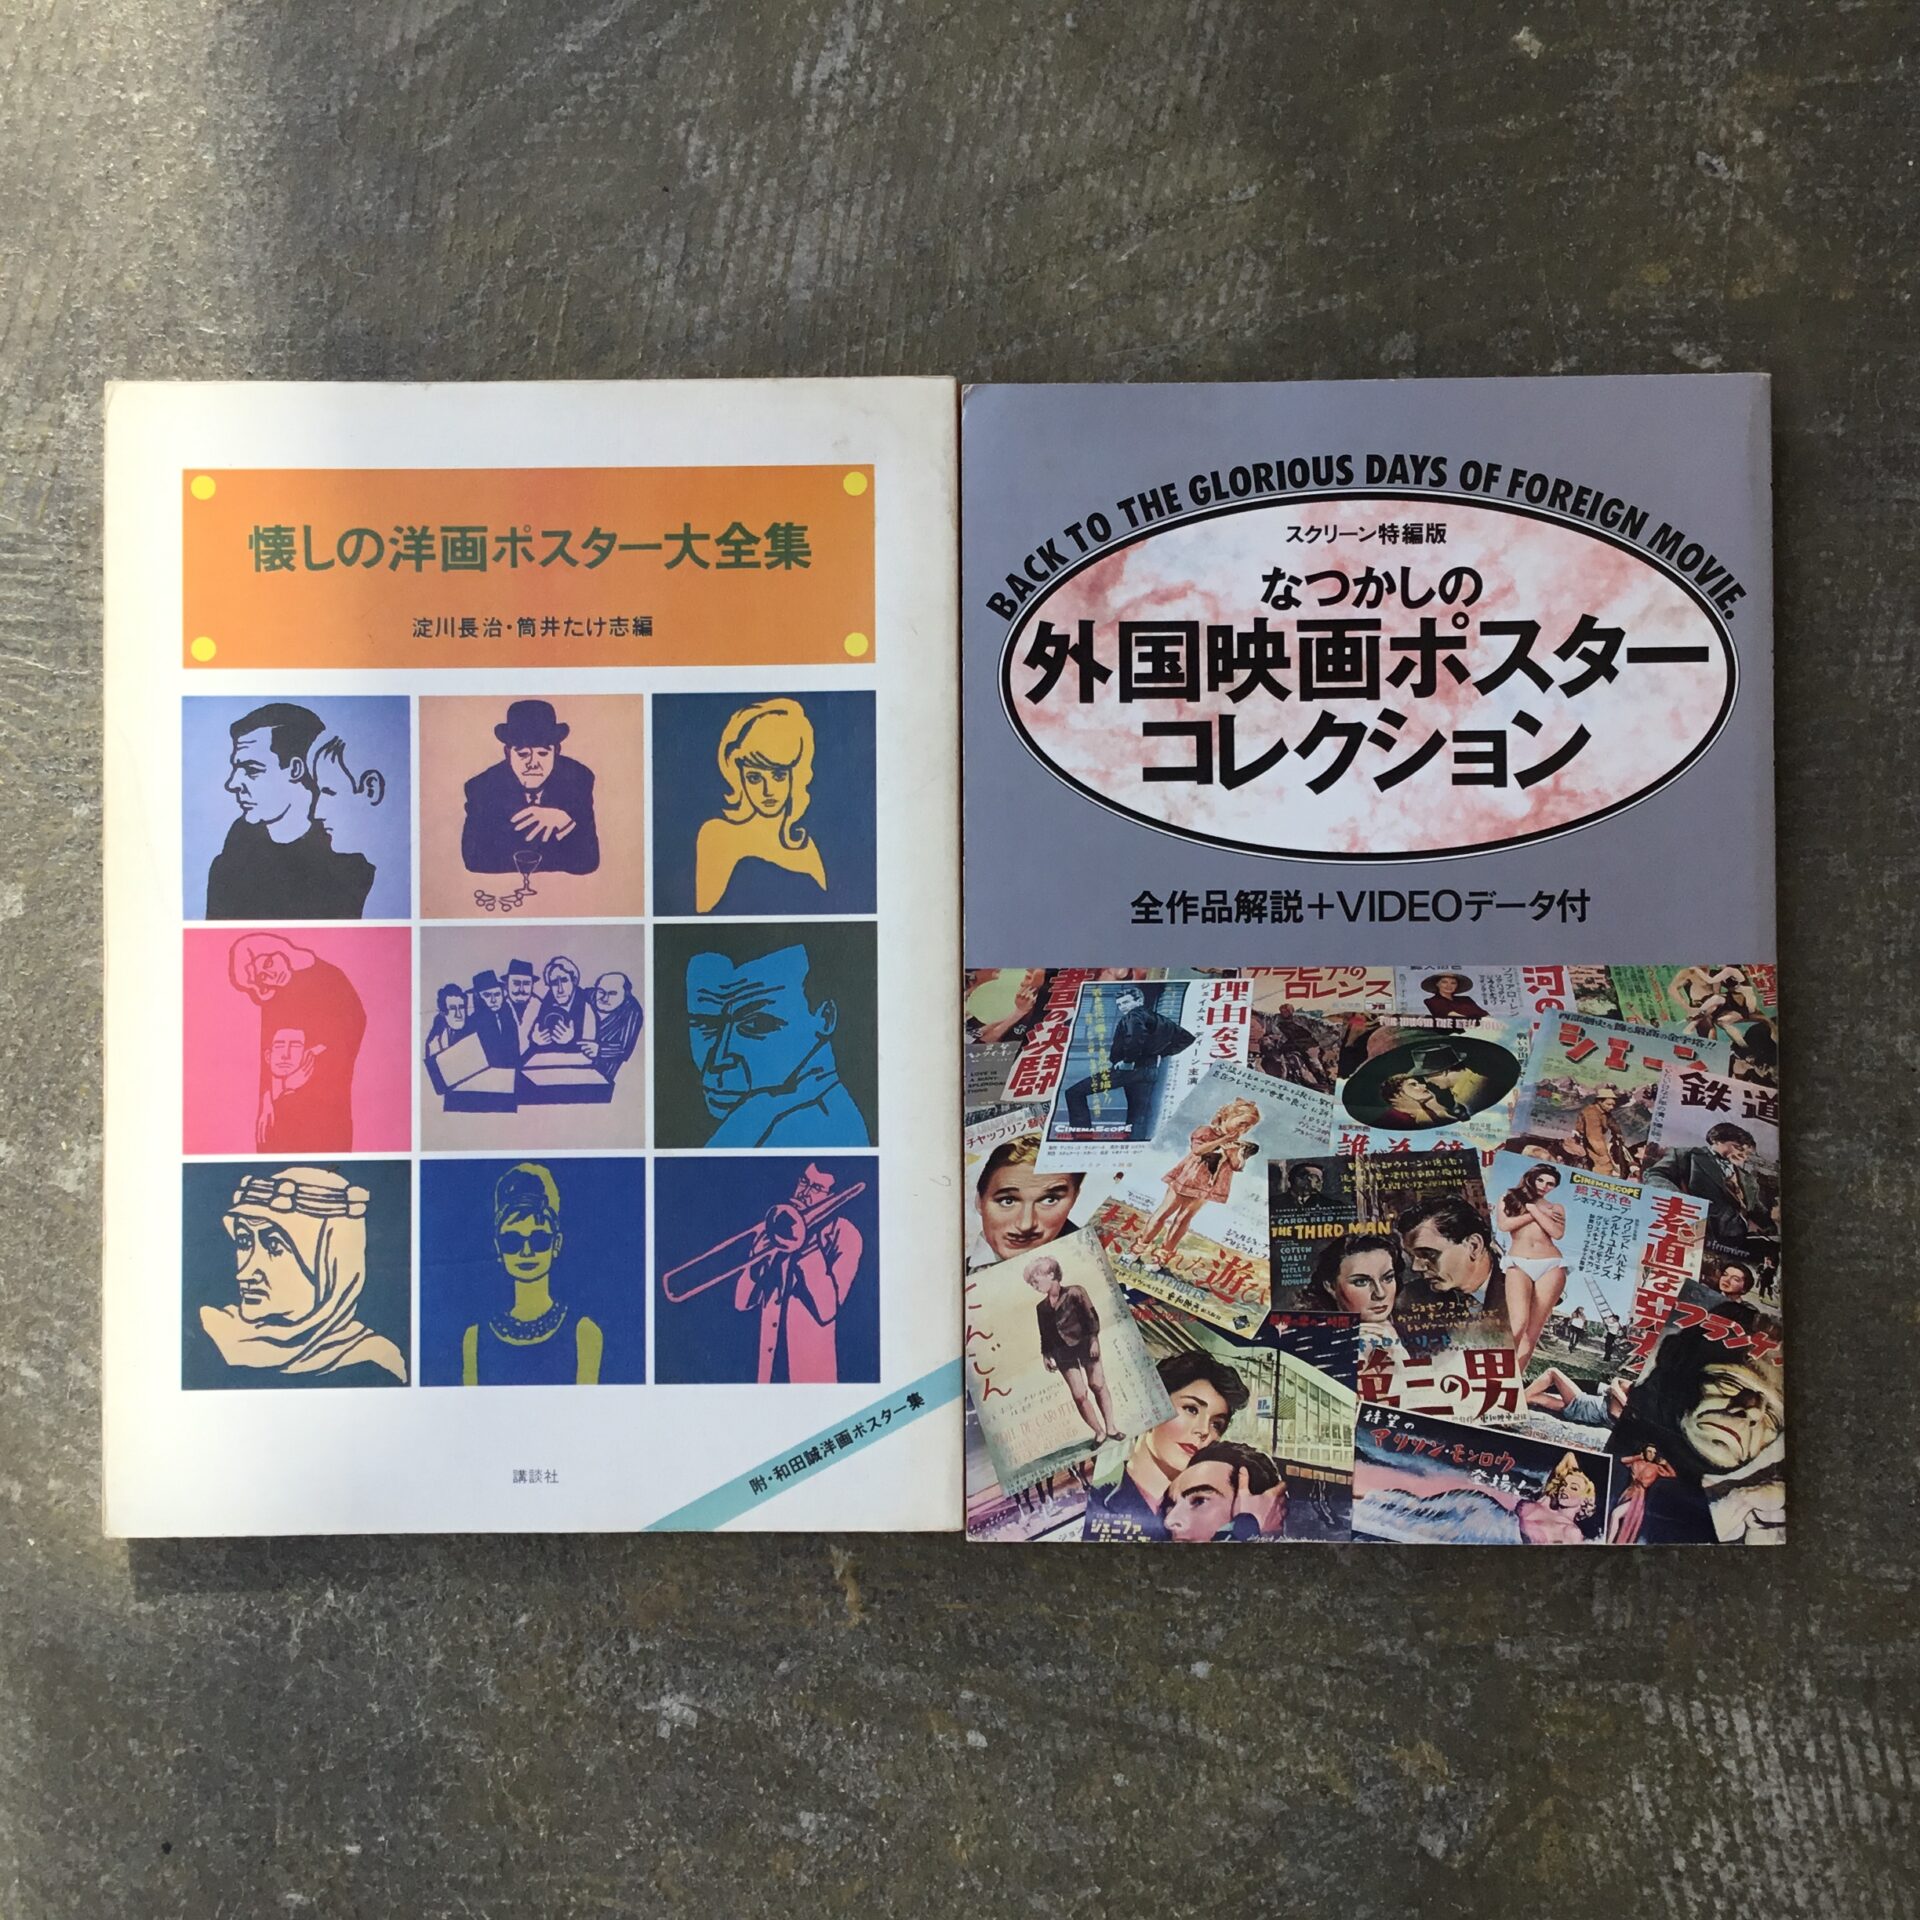 往年の外国映画ポスターコレクションを掲載した大判書籍が2冊入荷しました。